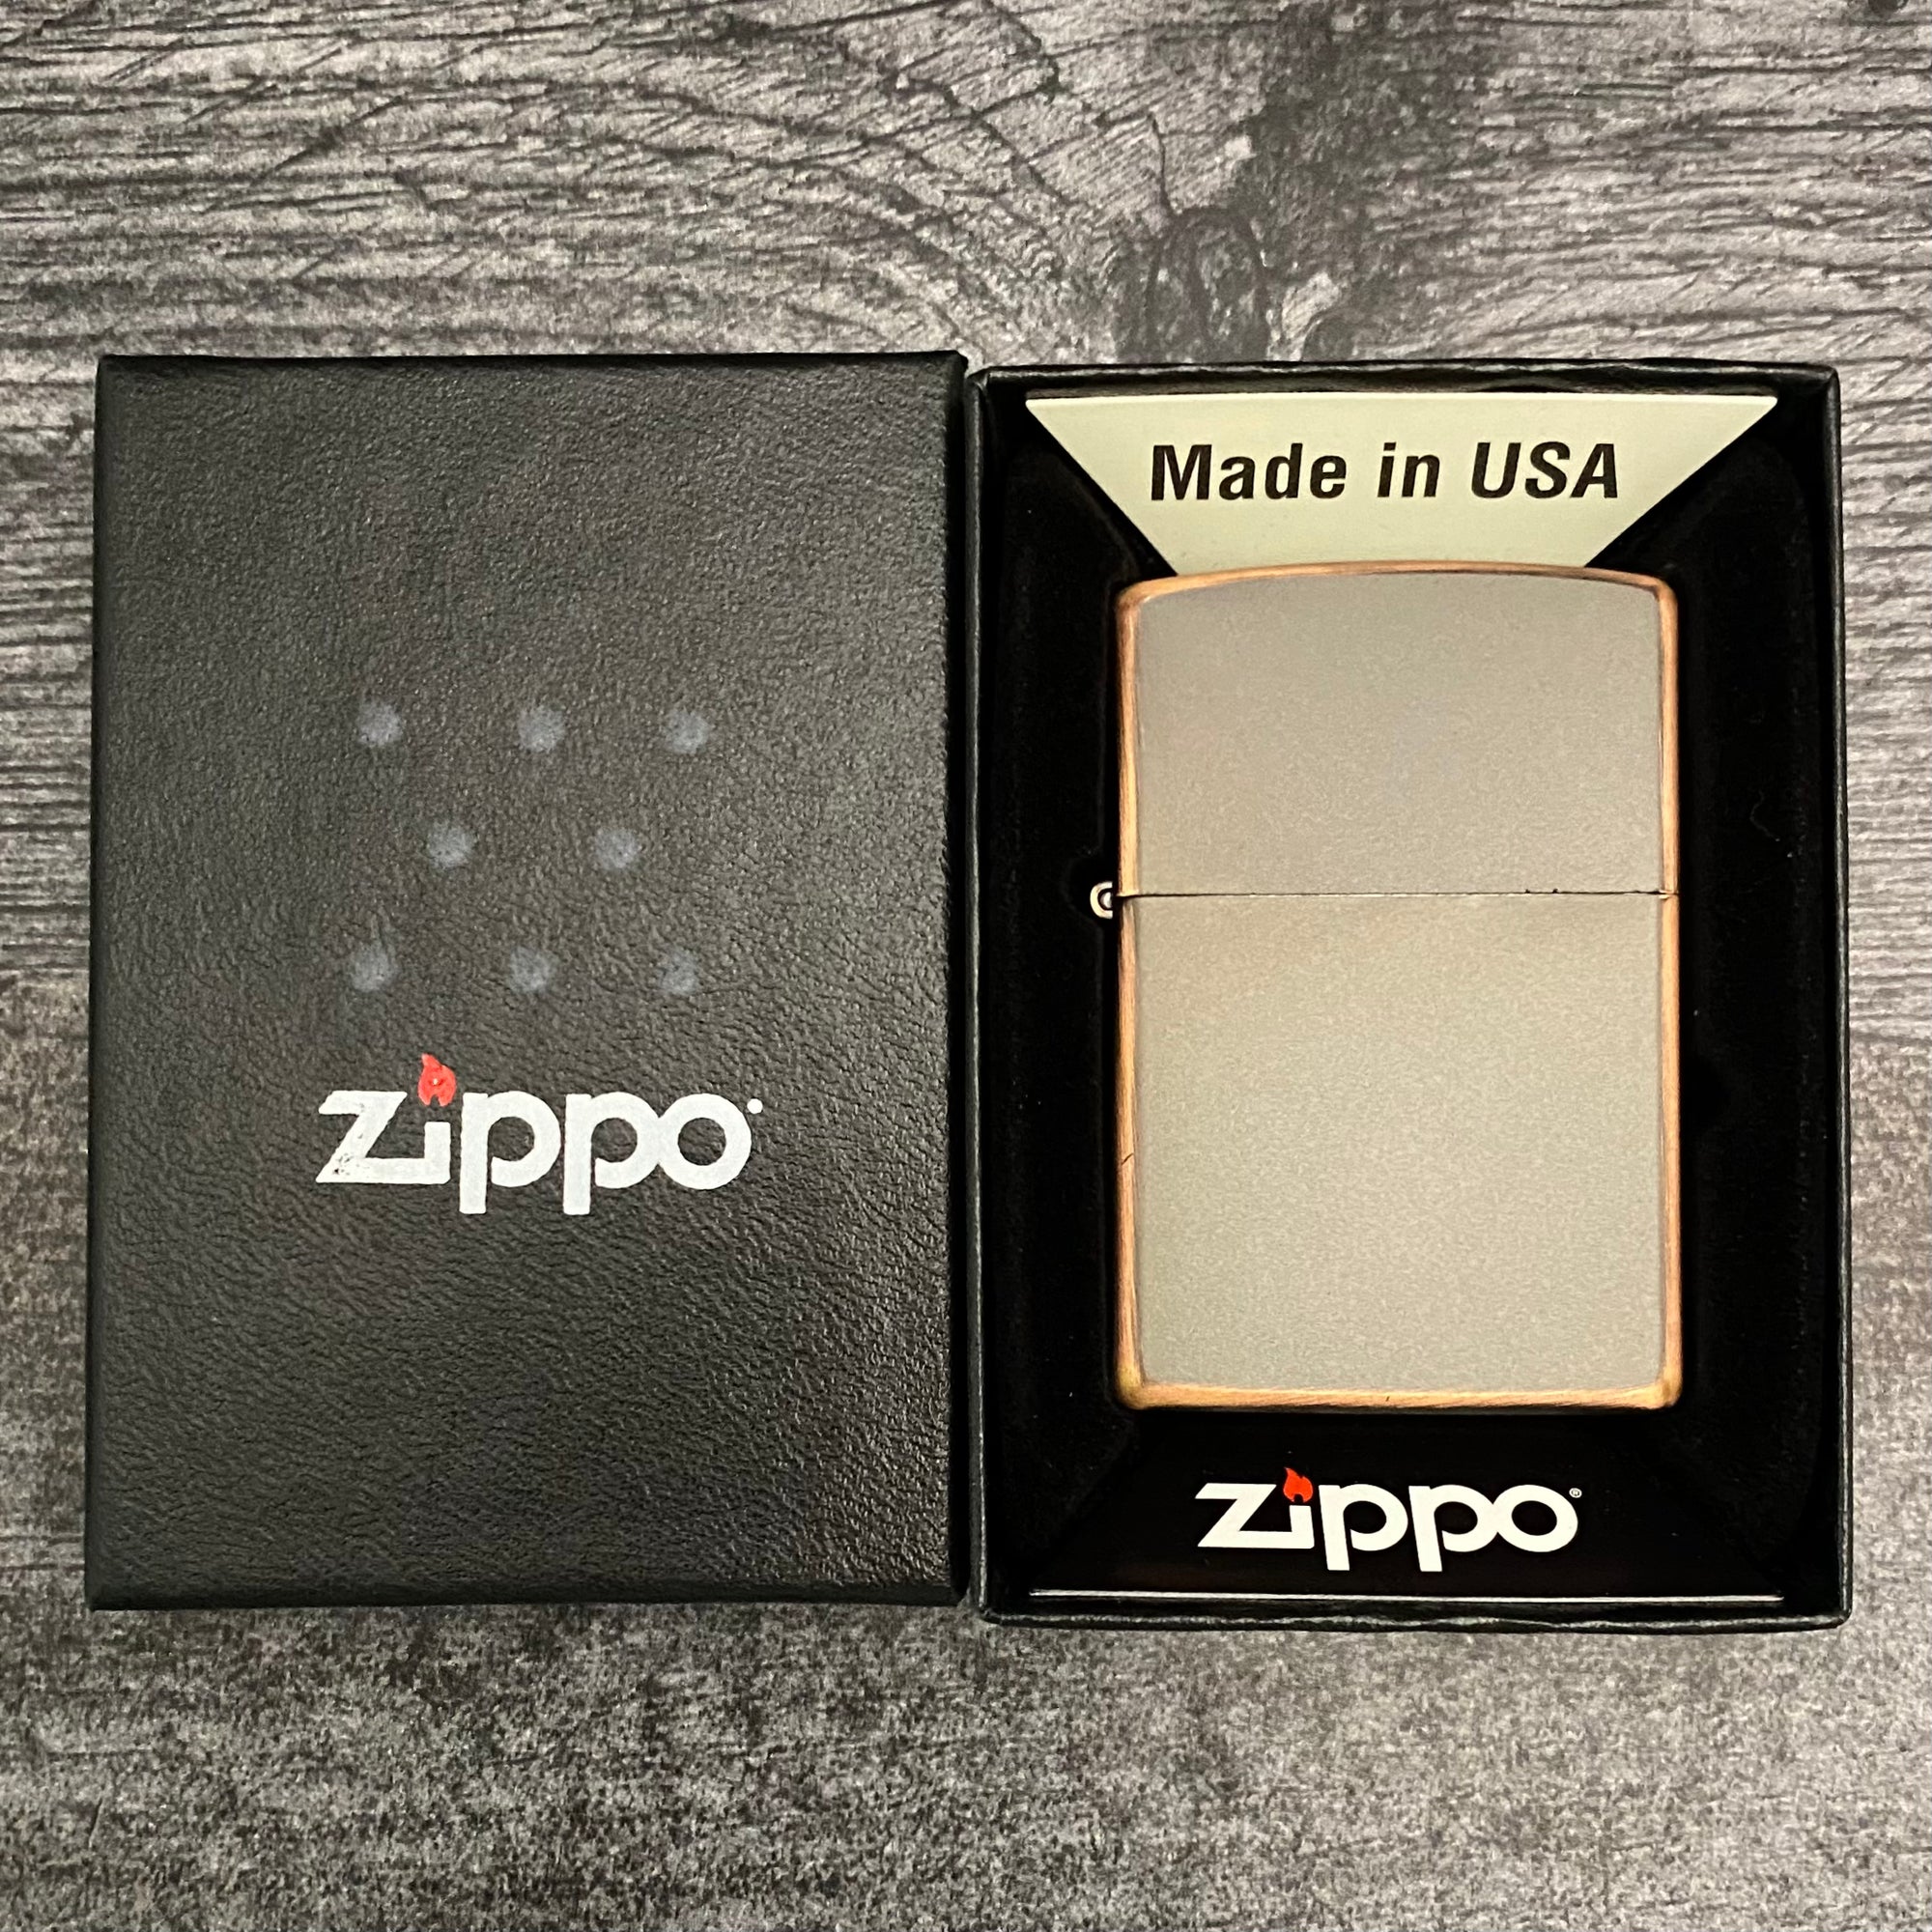 Zippo Lighter - Rustic Bronze